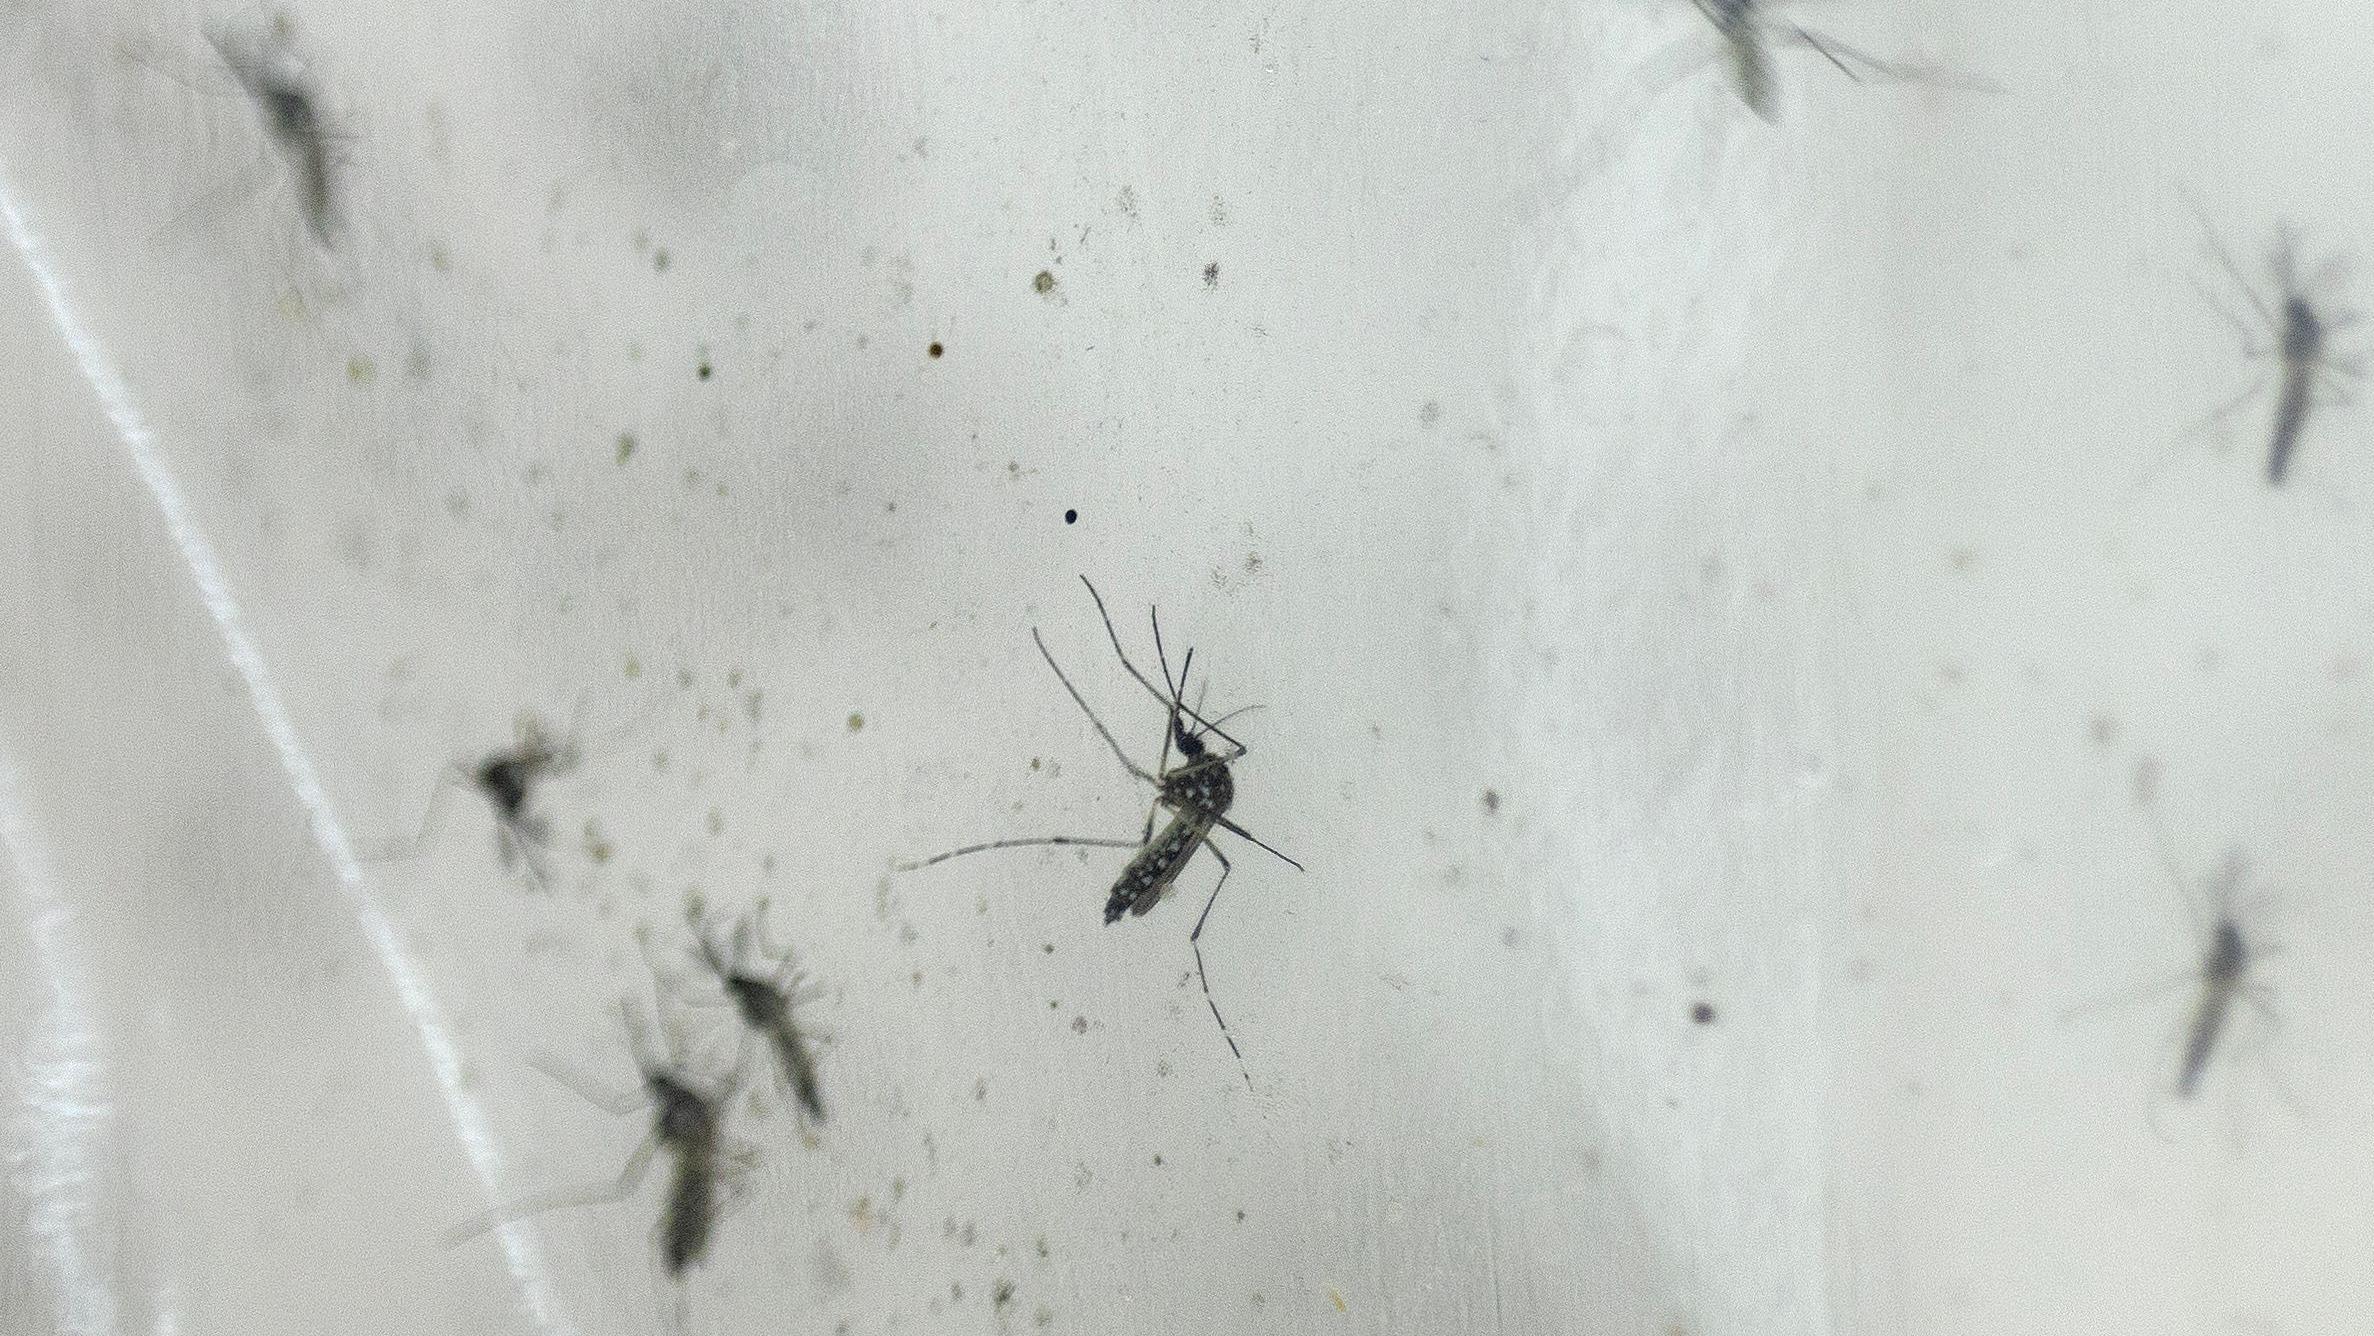 osquitos da dengue em imagem aproximada